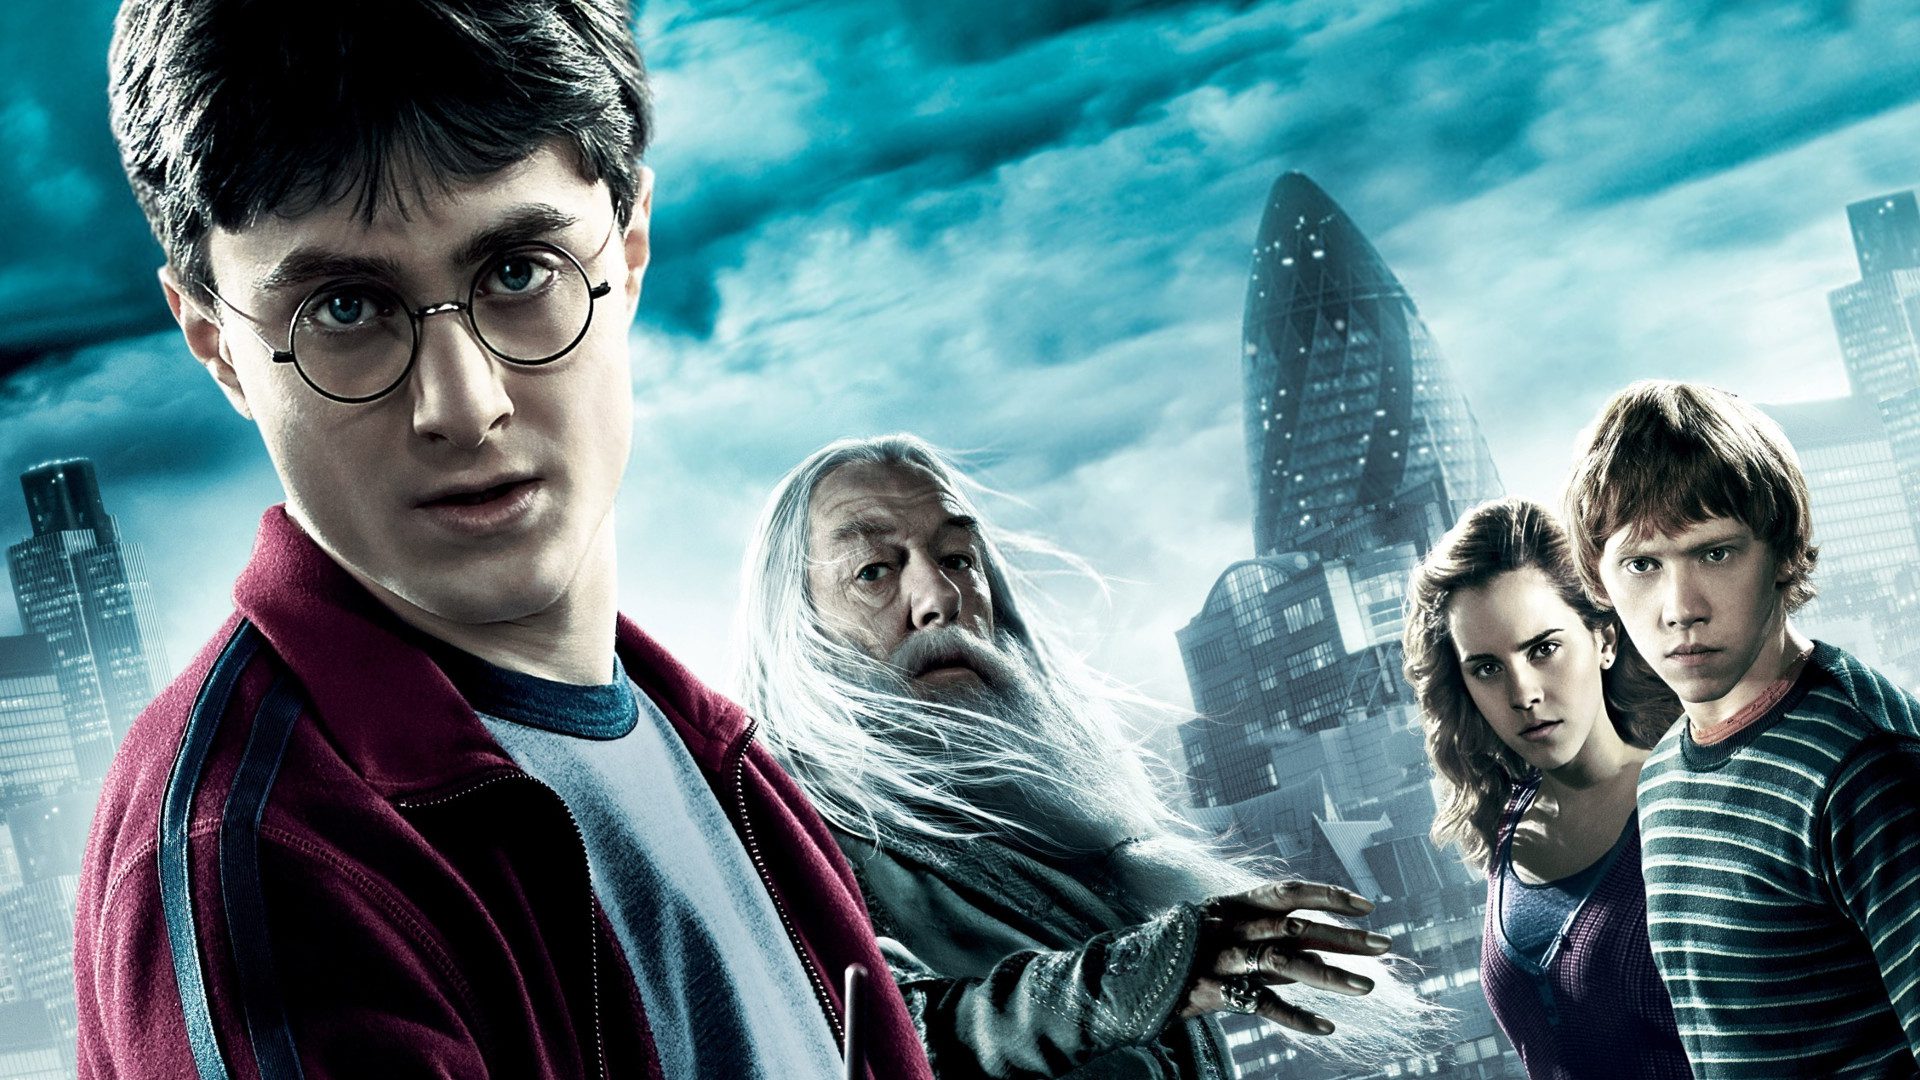 La recensione di Harry Potter e il principe mezzosangue, con Daniel Radcliffe